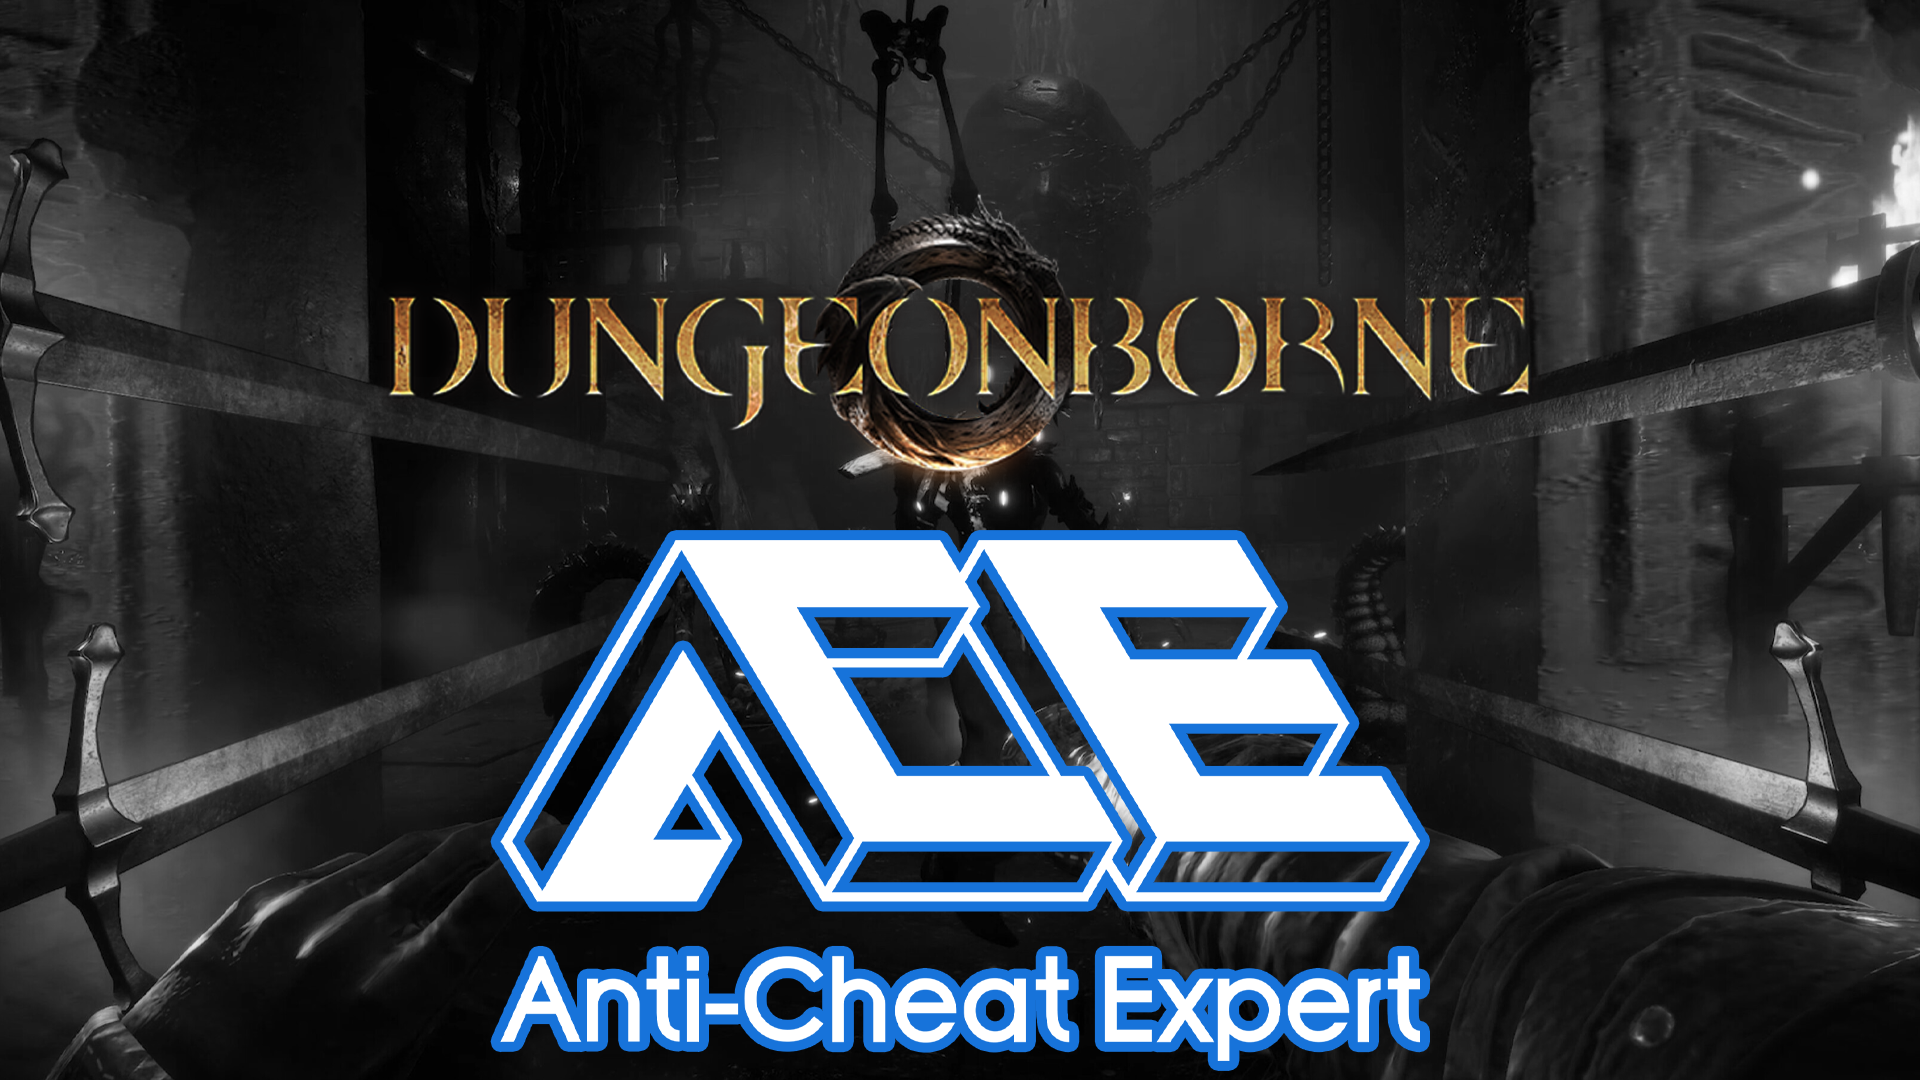 Dungeonborne ACE Anticheat Uninstall